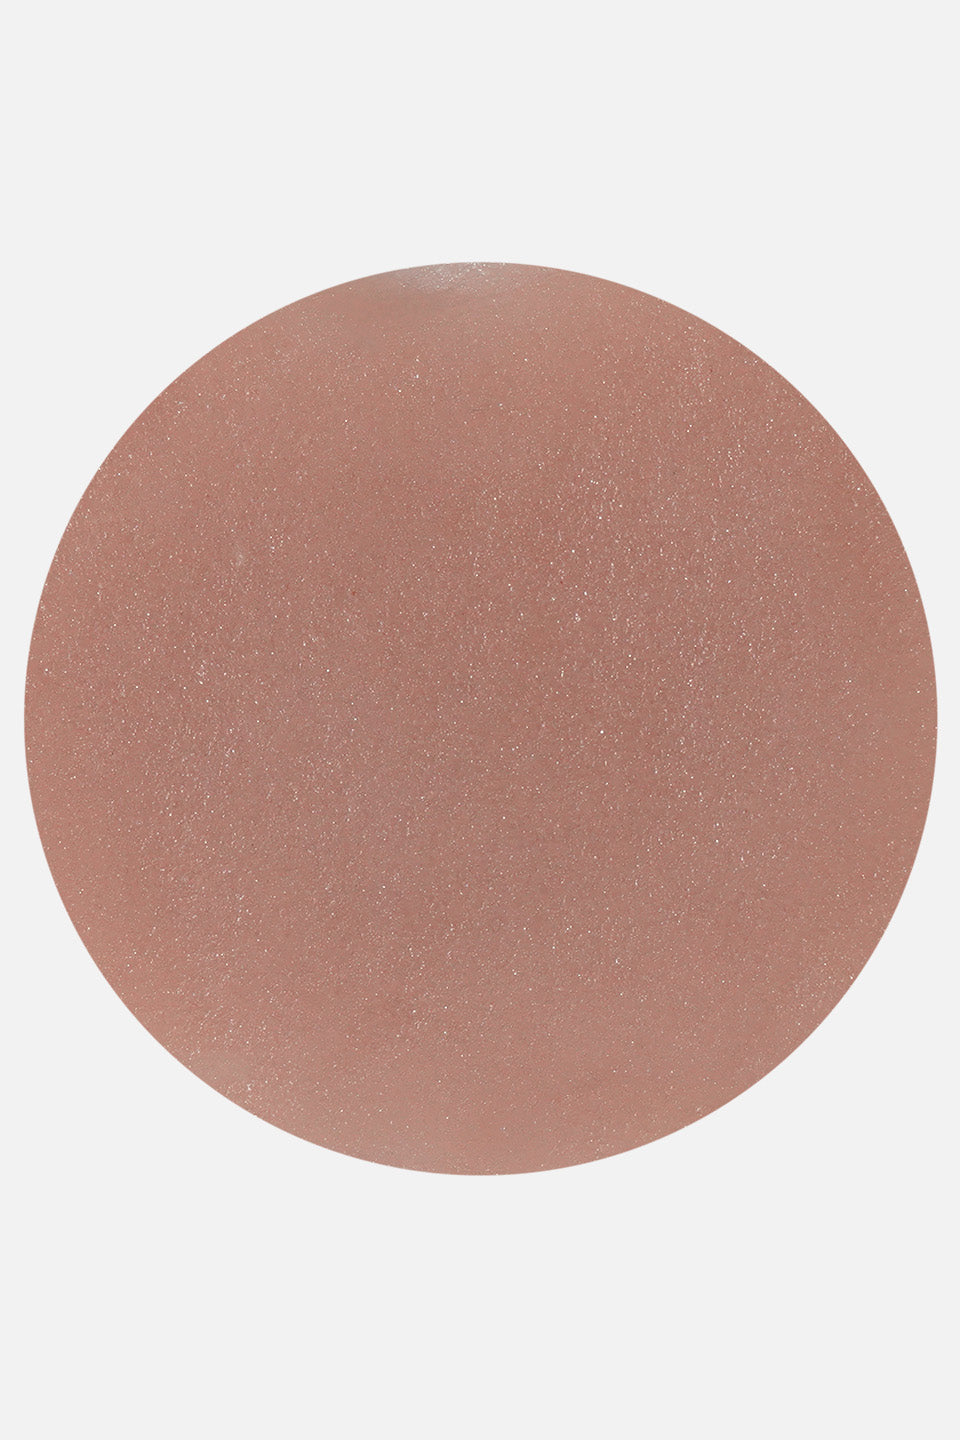 Polvere acrilica rosa Polypink cover 45 g